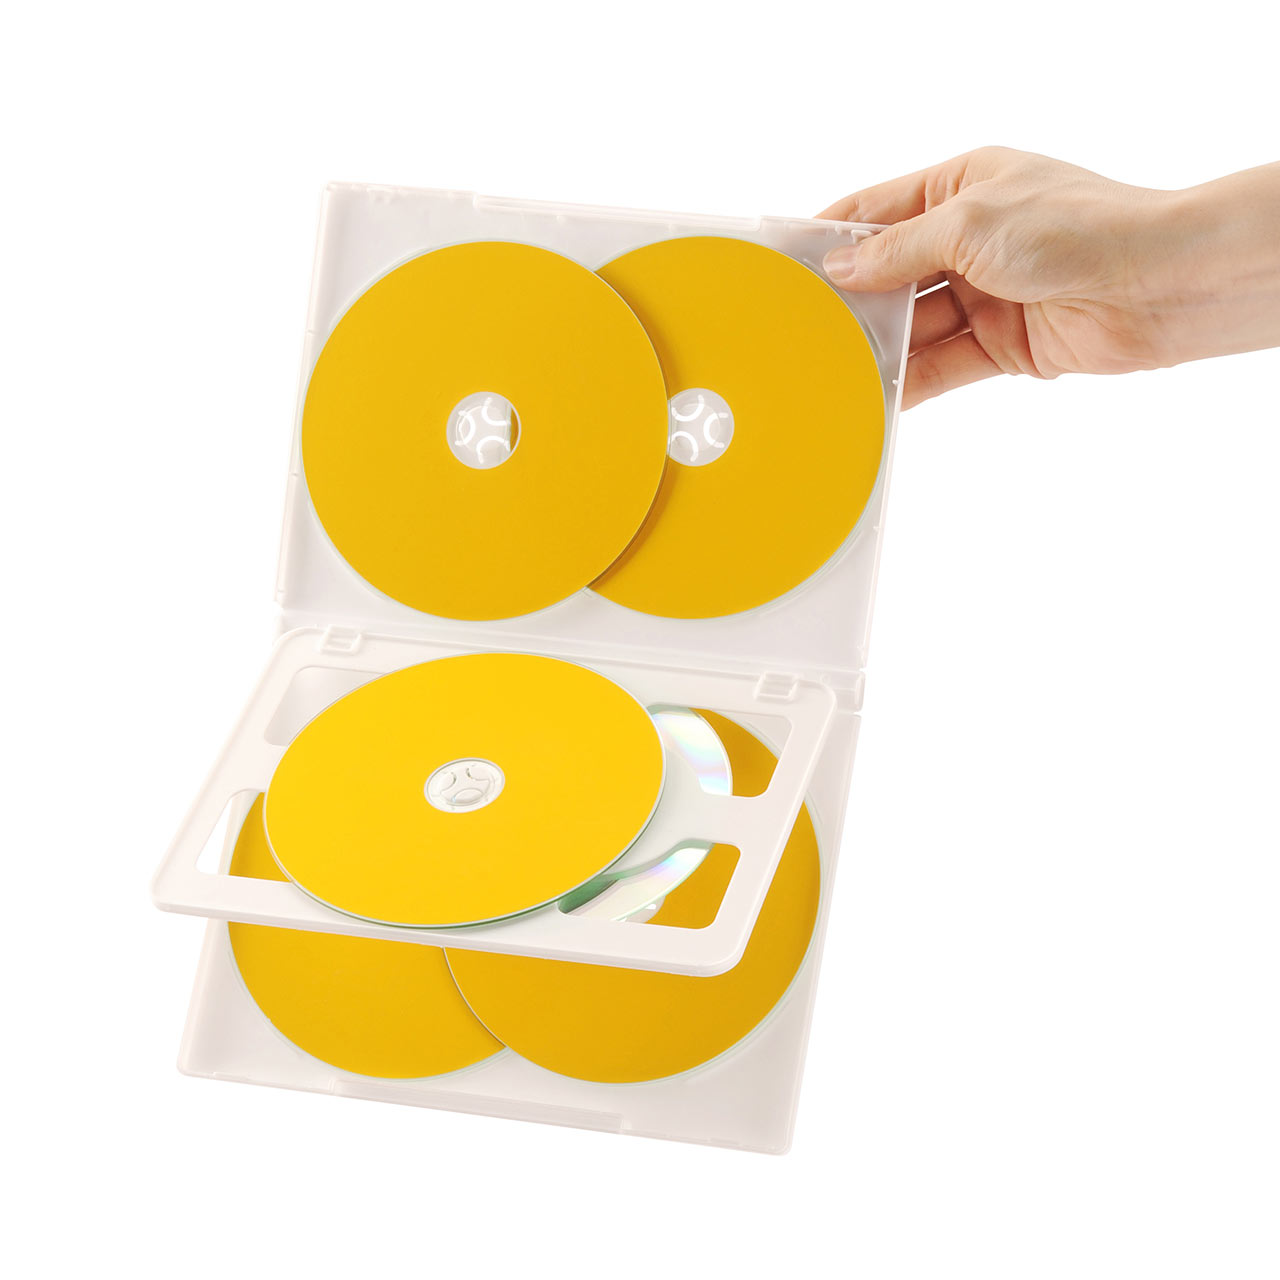 サンワサプライ DVDトールケース(6枚収納・3枚セット・ブラック) DVD-TN6-03BKN